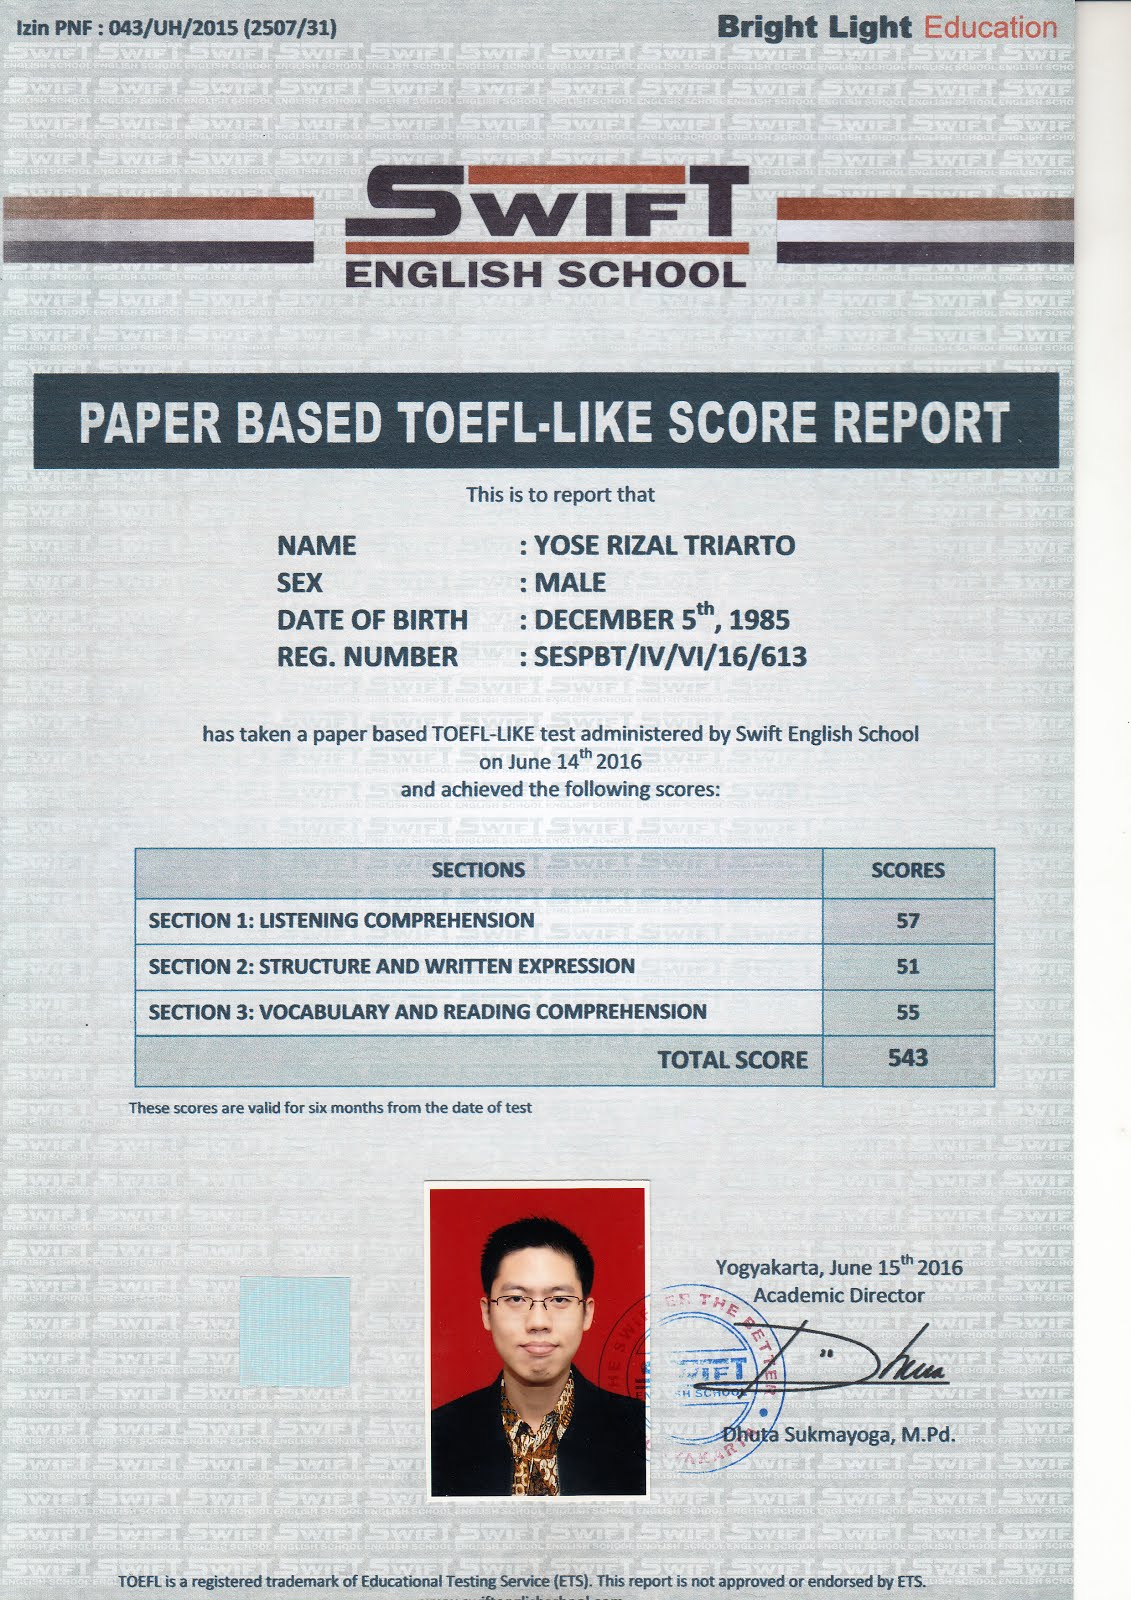 SWIFT English School Paper Based TOEFL-Like Score Report | Total Score 543